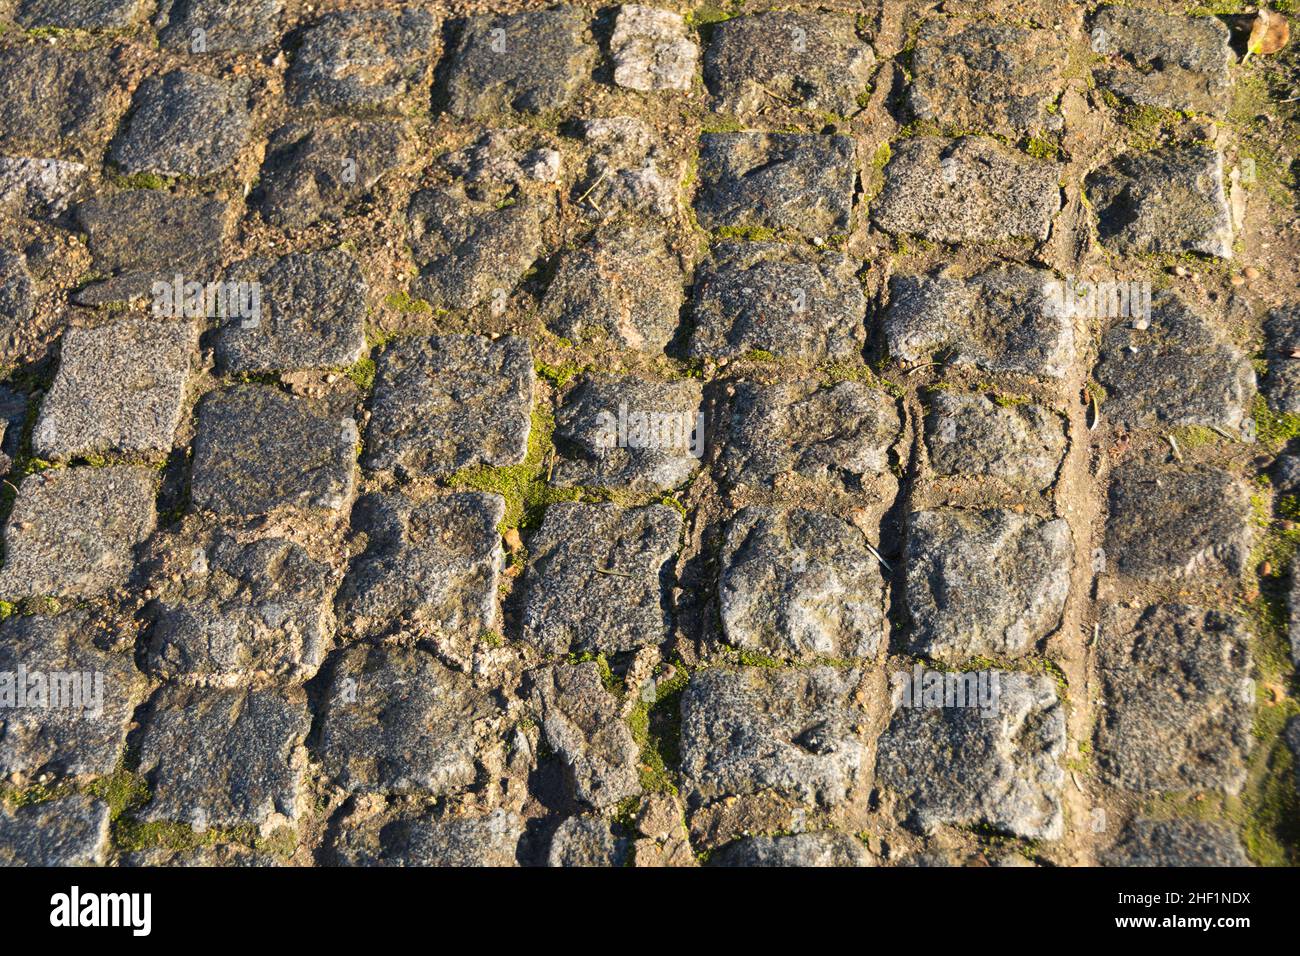 Primer plano de piedras de pavimentación desgastadas cubiertas de musgo Foto de stock